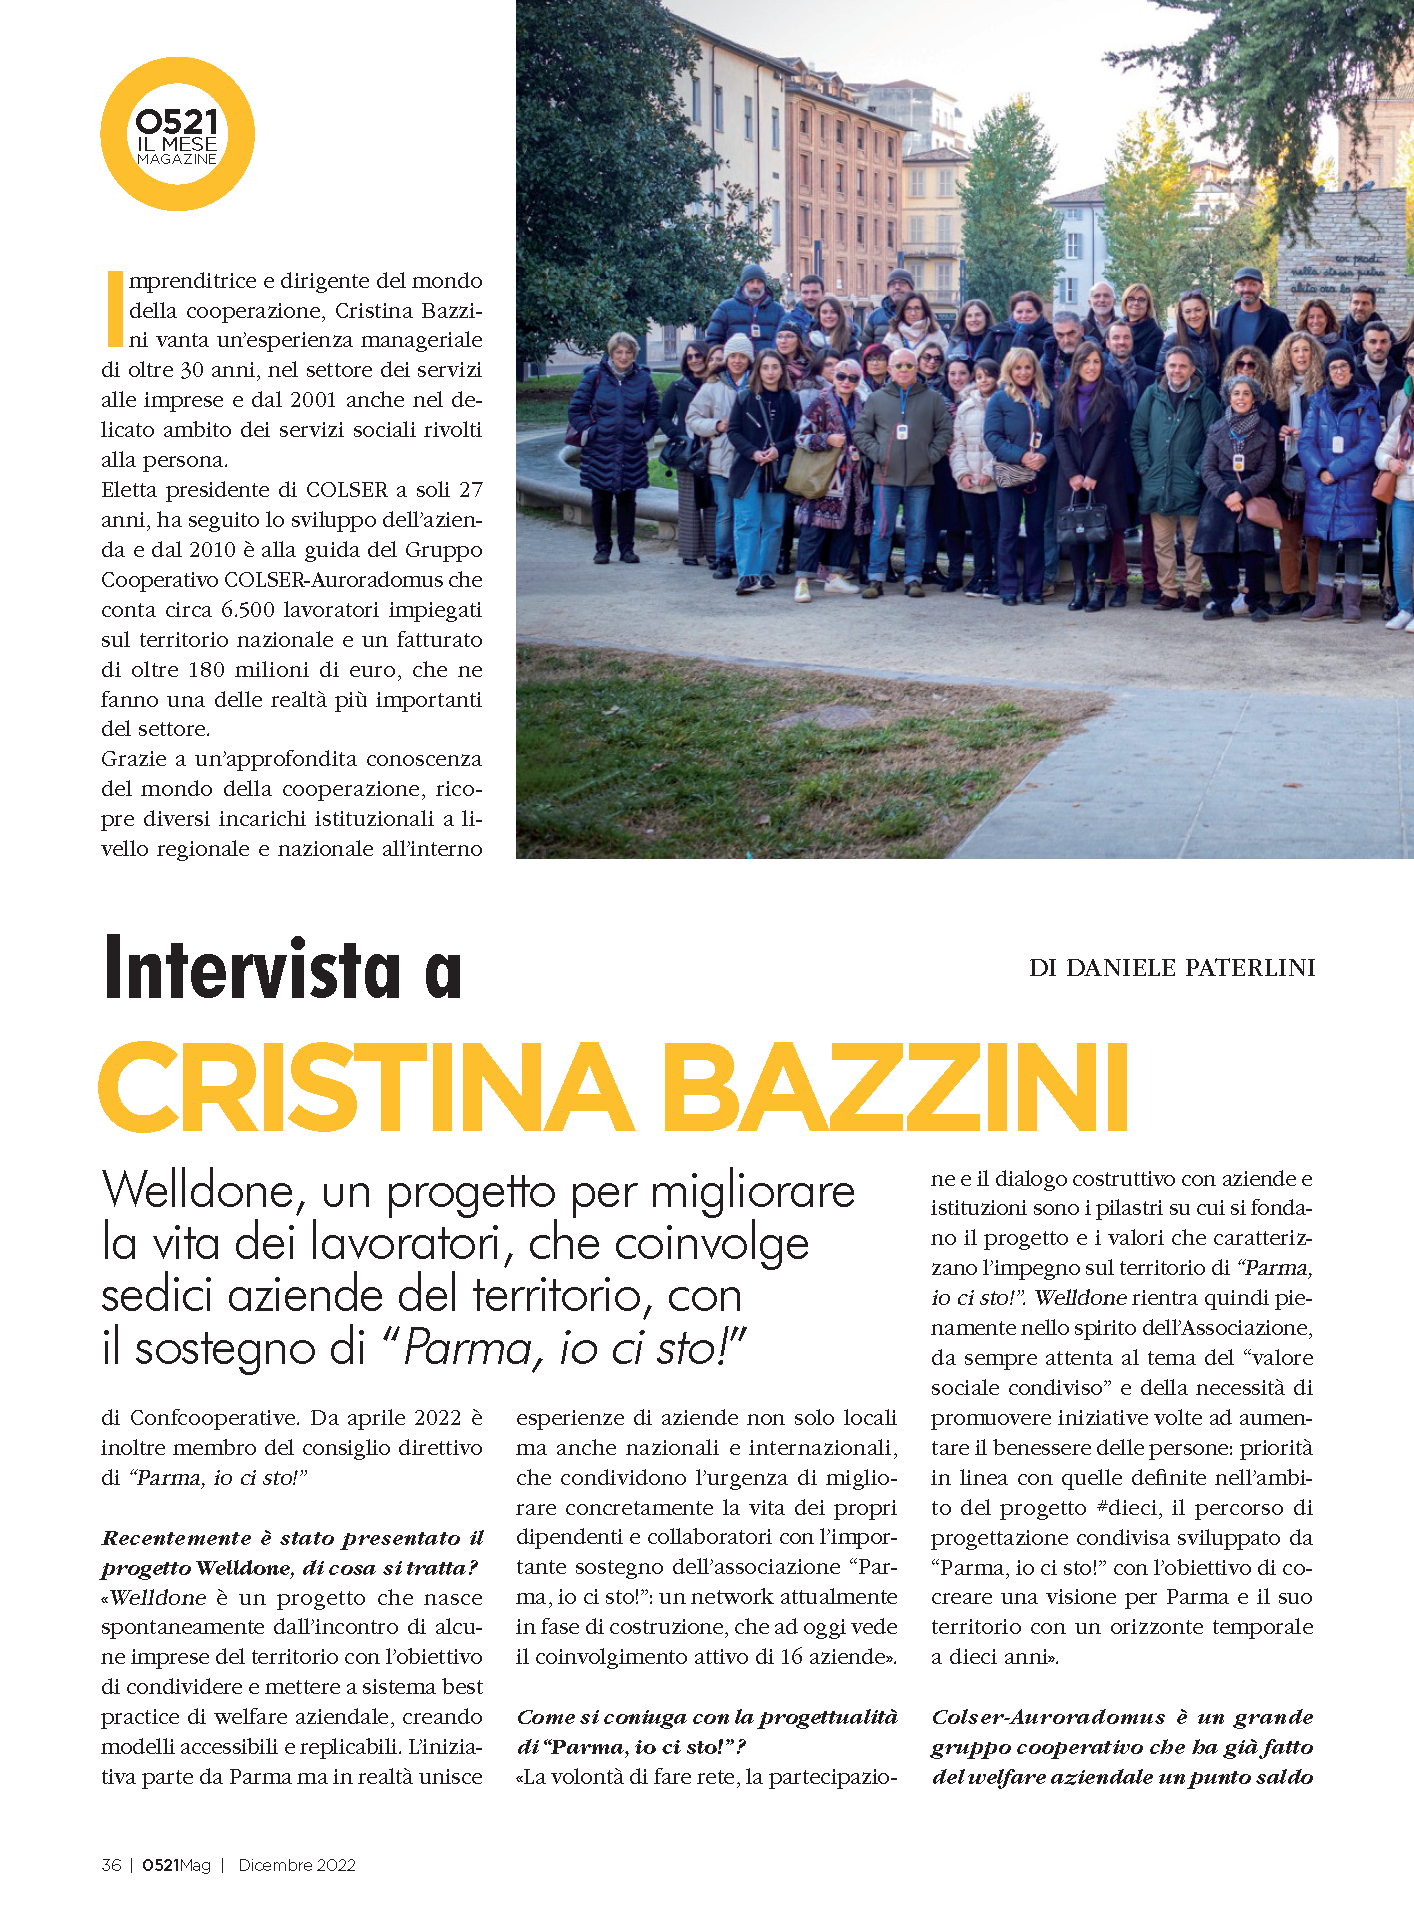 Intervista a Cristina Bazzini: WELLDONE, progetto di rete volto al benessere dei lavoratori